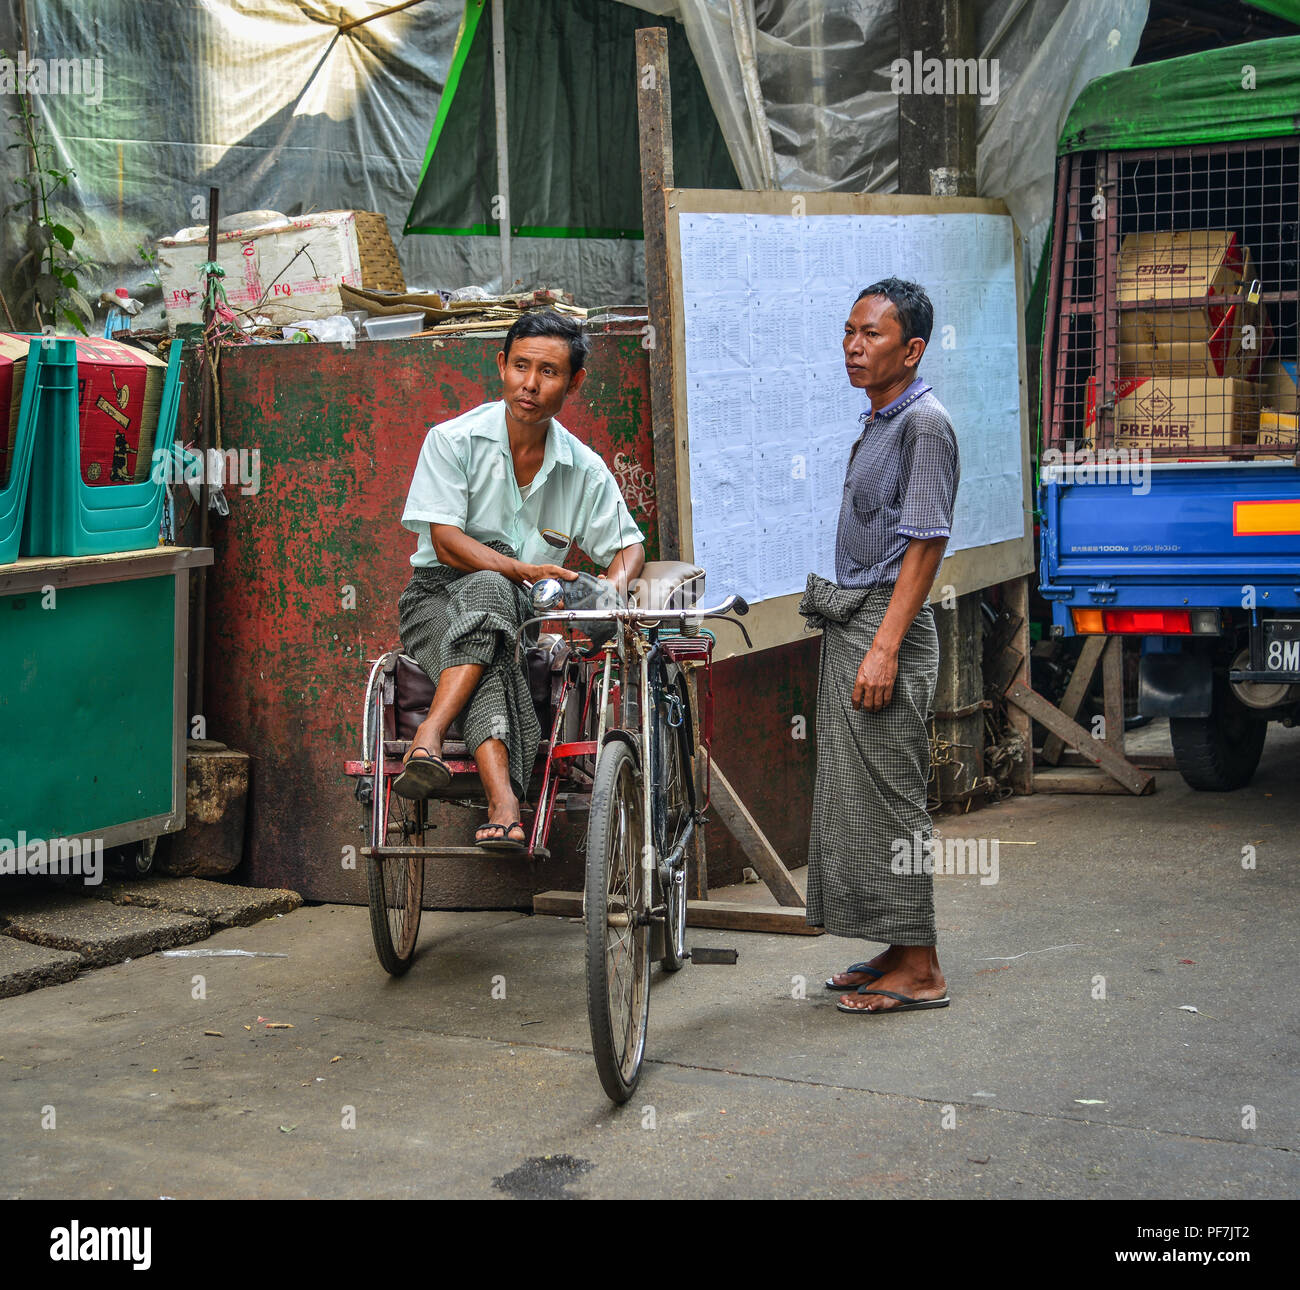 Yangon, Myanmar - Feb 1, 2017. Pedicab driver auf der Straße in Yangon, Myanmar. Myanmar Yangon ist die größte Stadt und das wichtigste Handelszentrum. Stockfoto